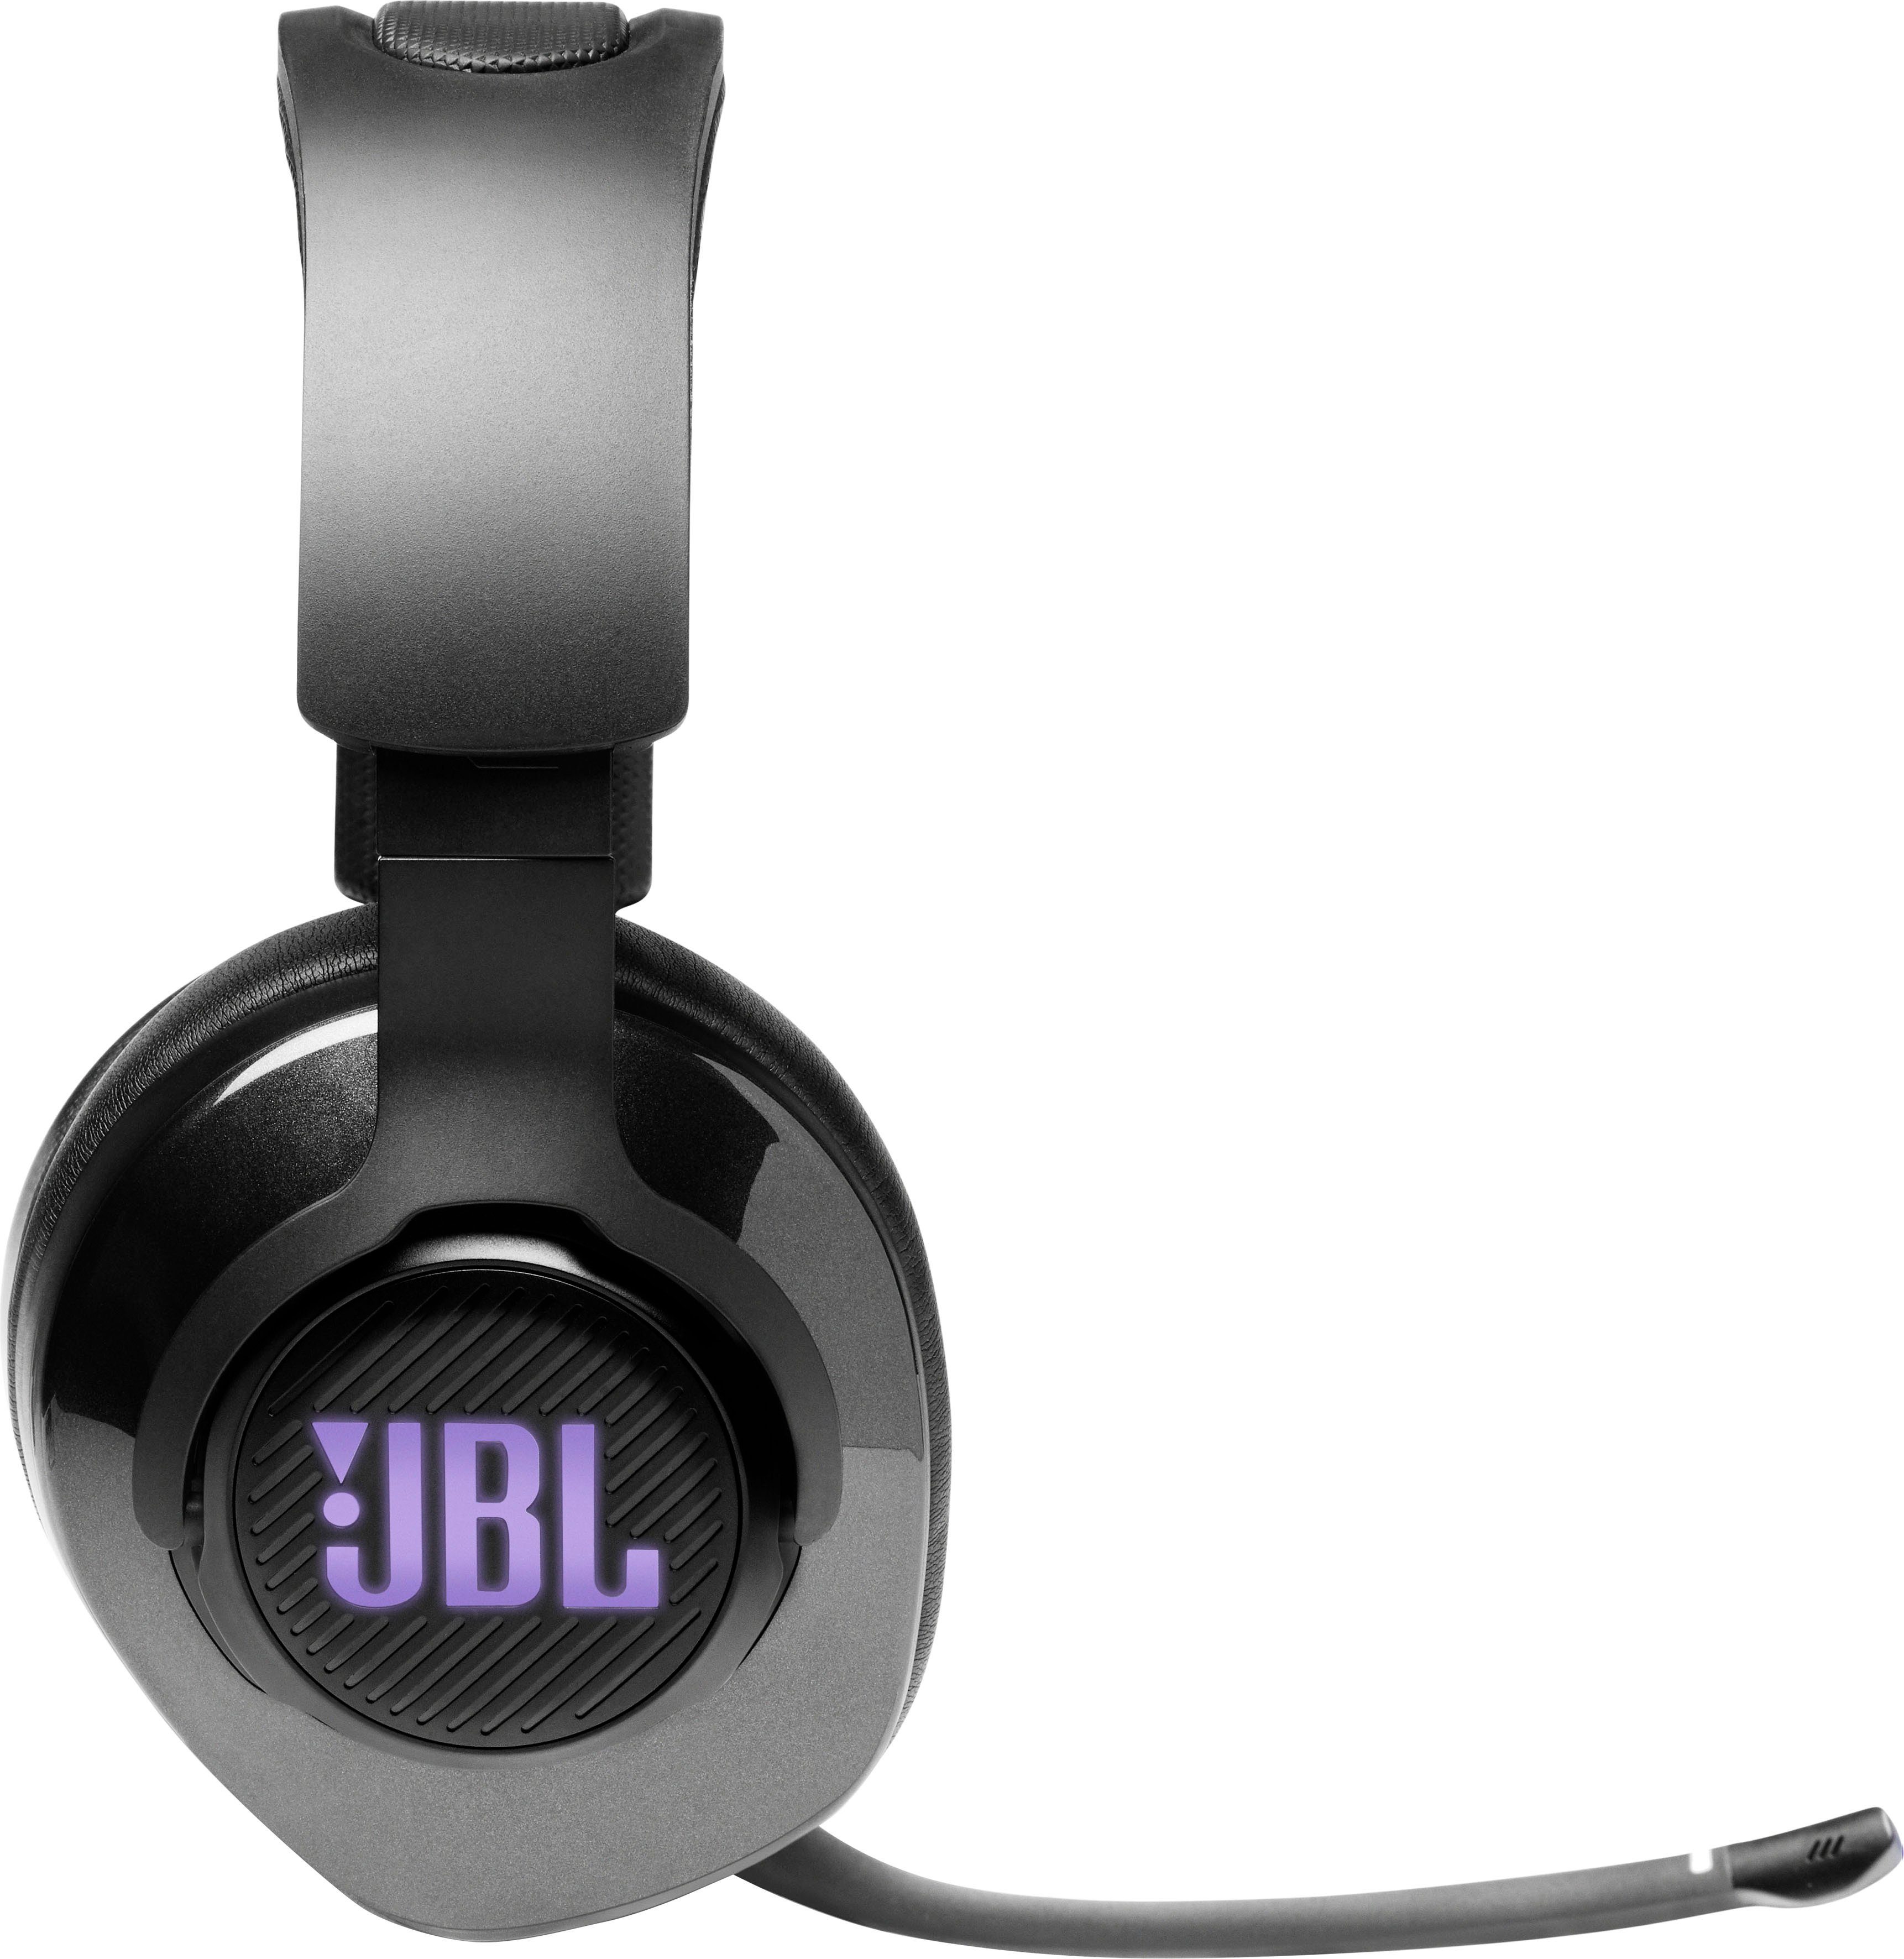 QUANTUM JBL Gaming-Headset 400